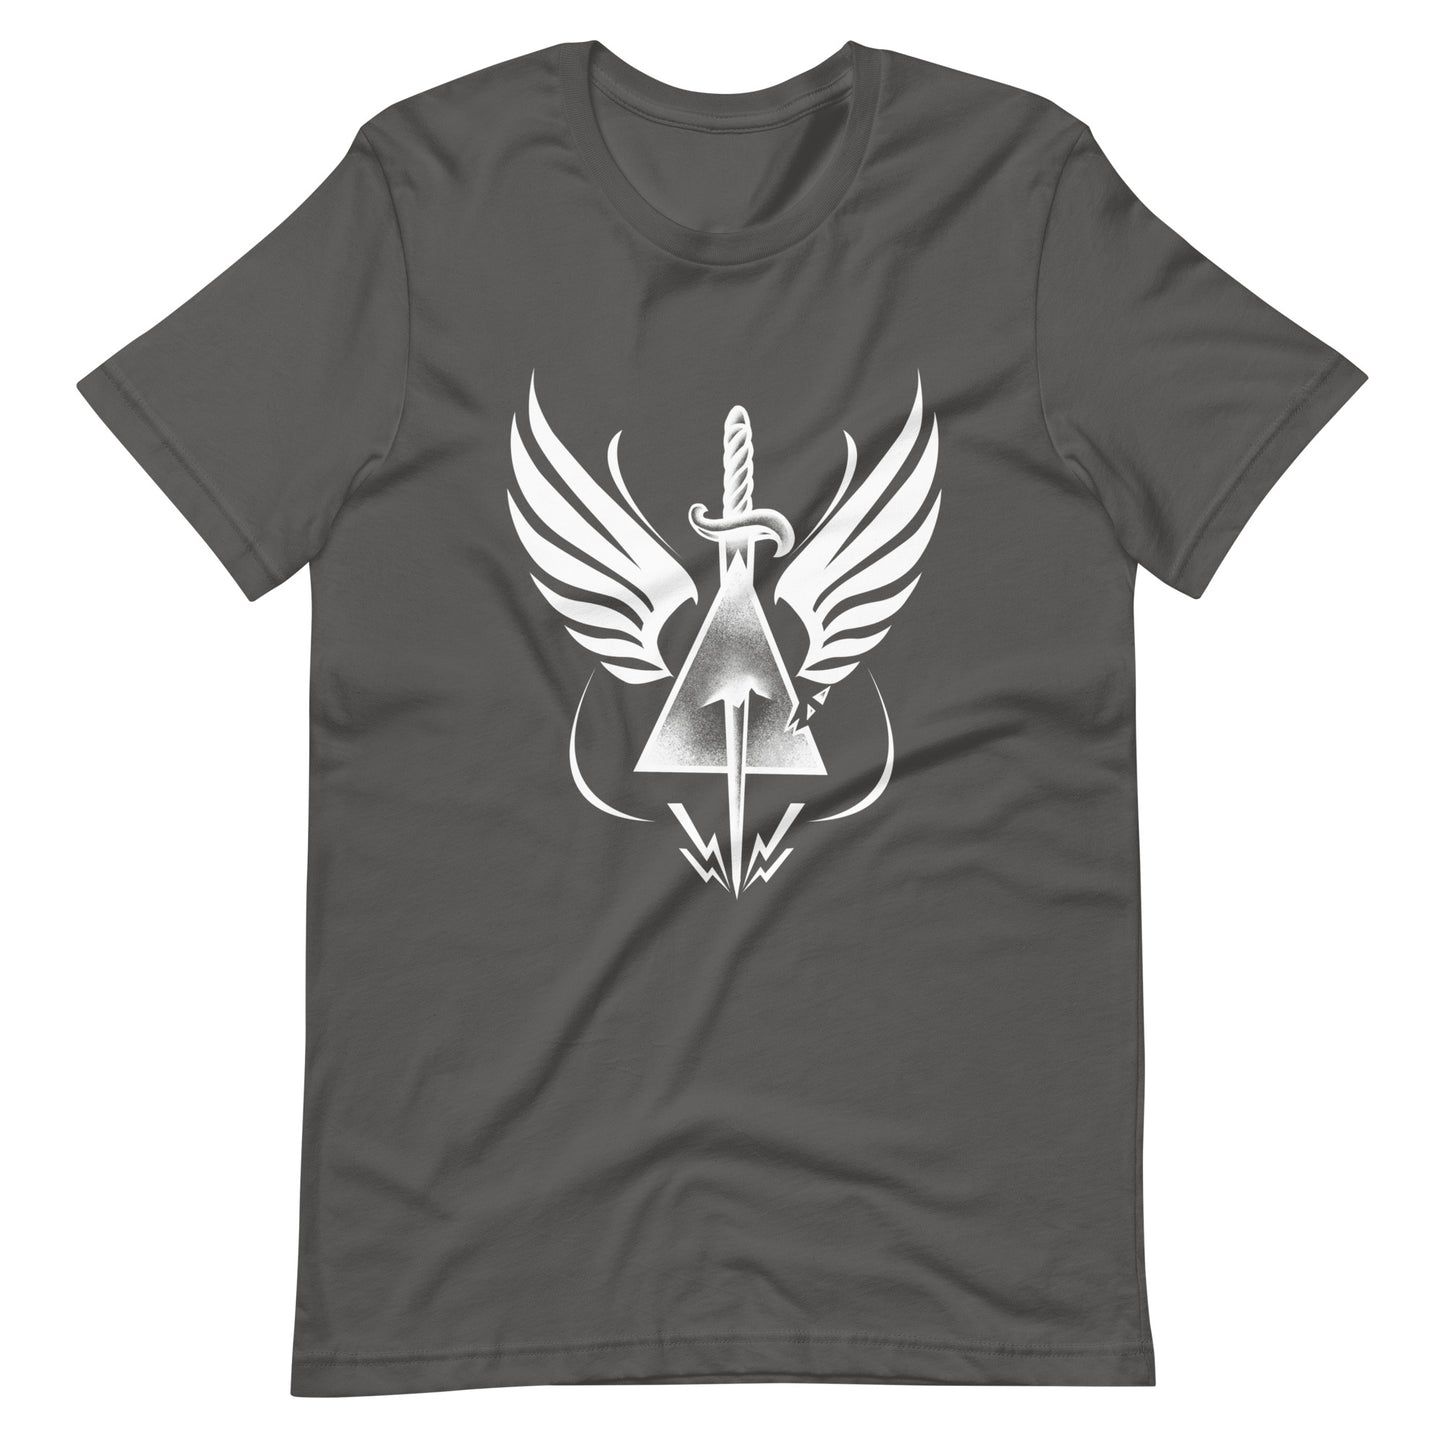 Dead Triangle - Men's t-shirt - Asphalt Front